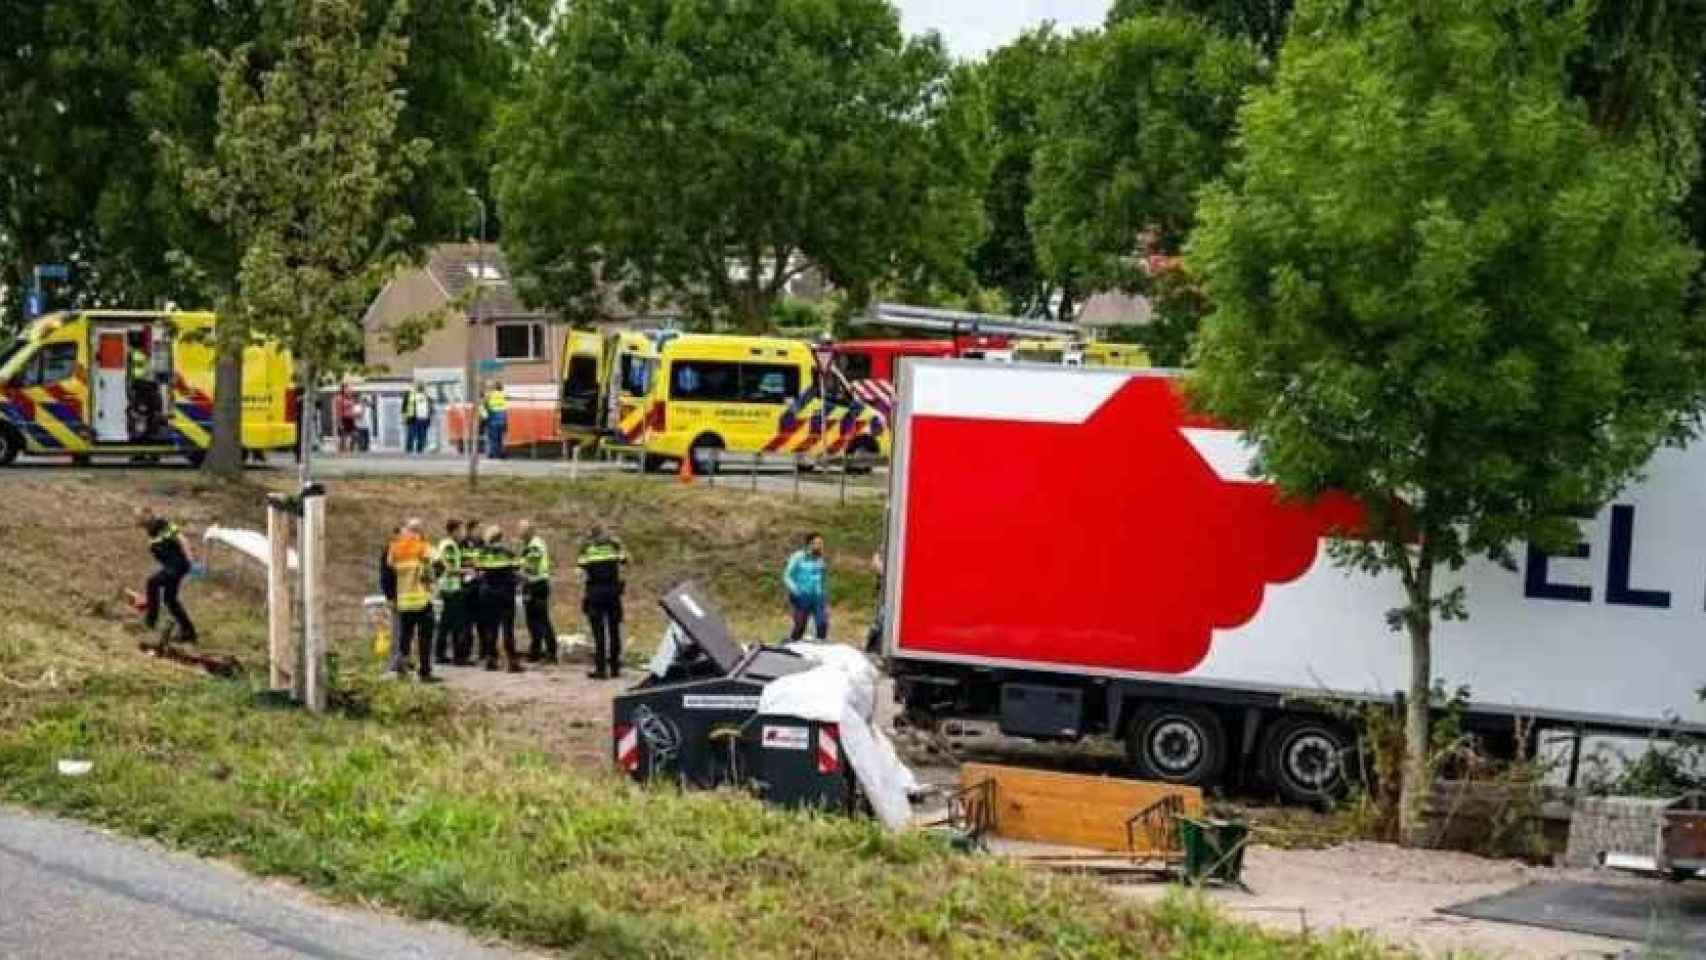 Efectivos de emergencias junto a una de las carpas de la barbacoa arrollada por el camión de El Mosca, el sábado 27 de agosto, en la aldea holandesa de Zuidzijde.